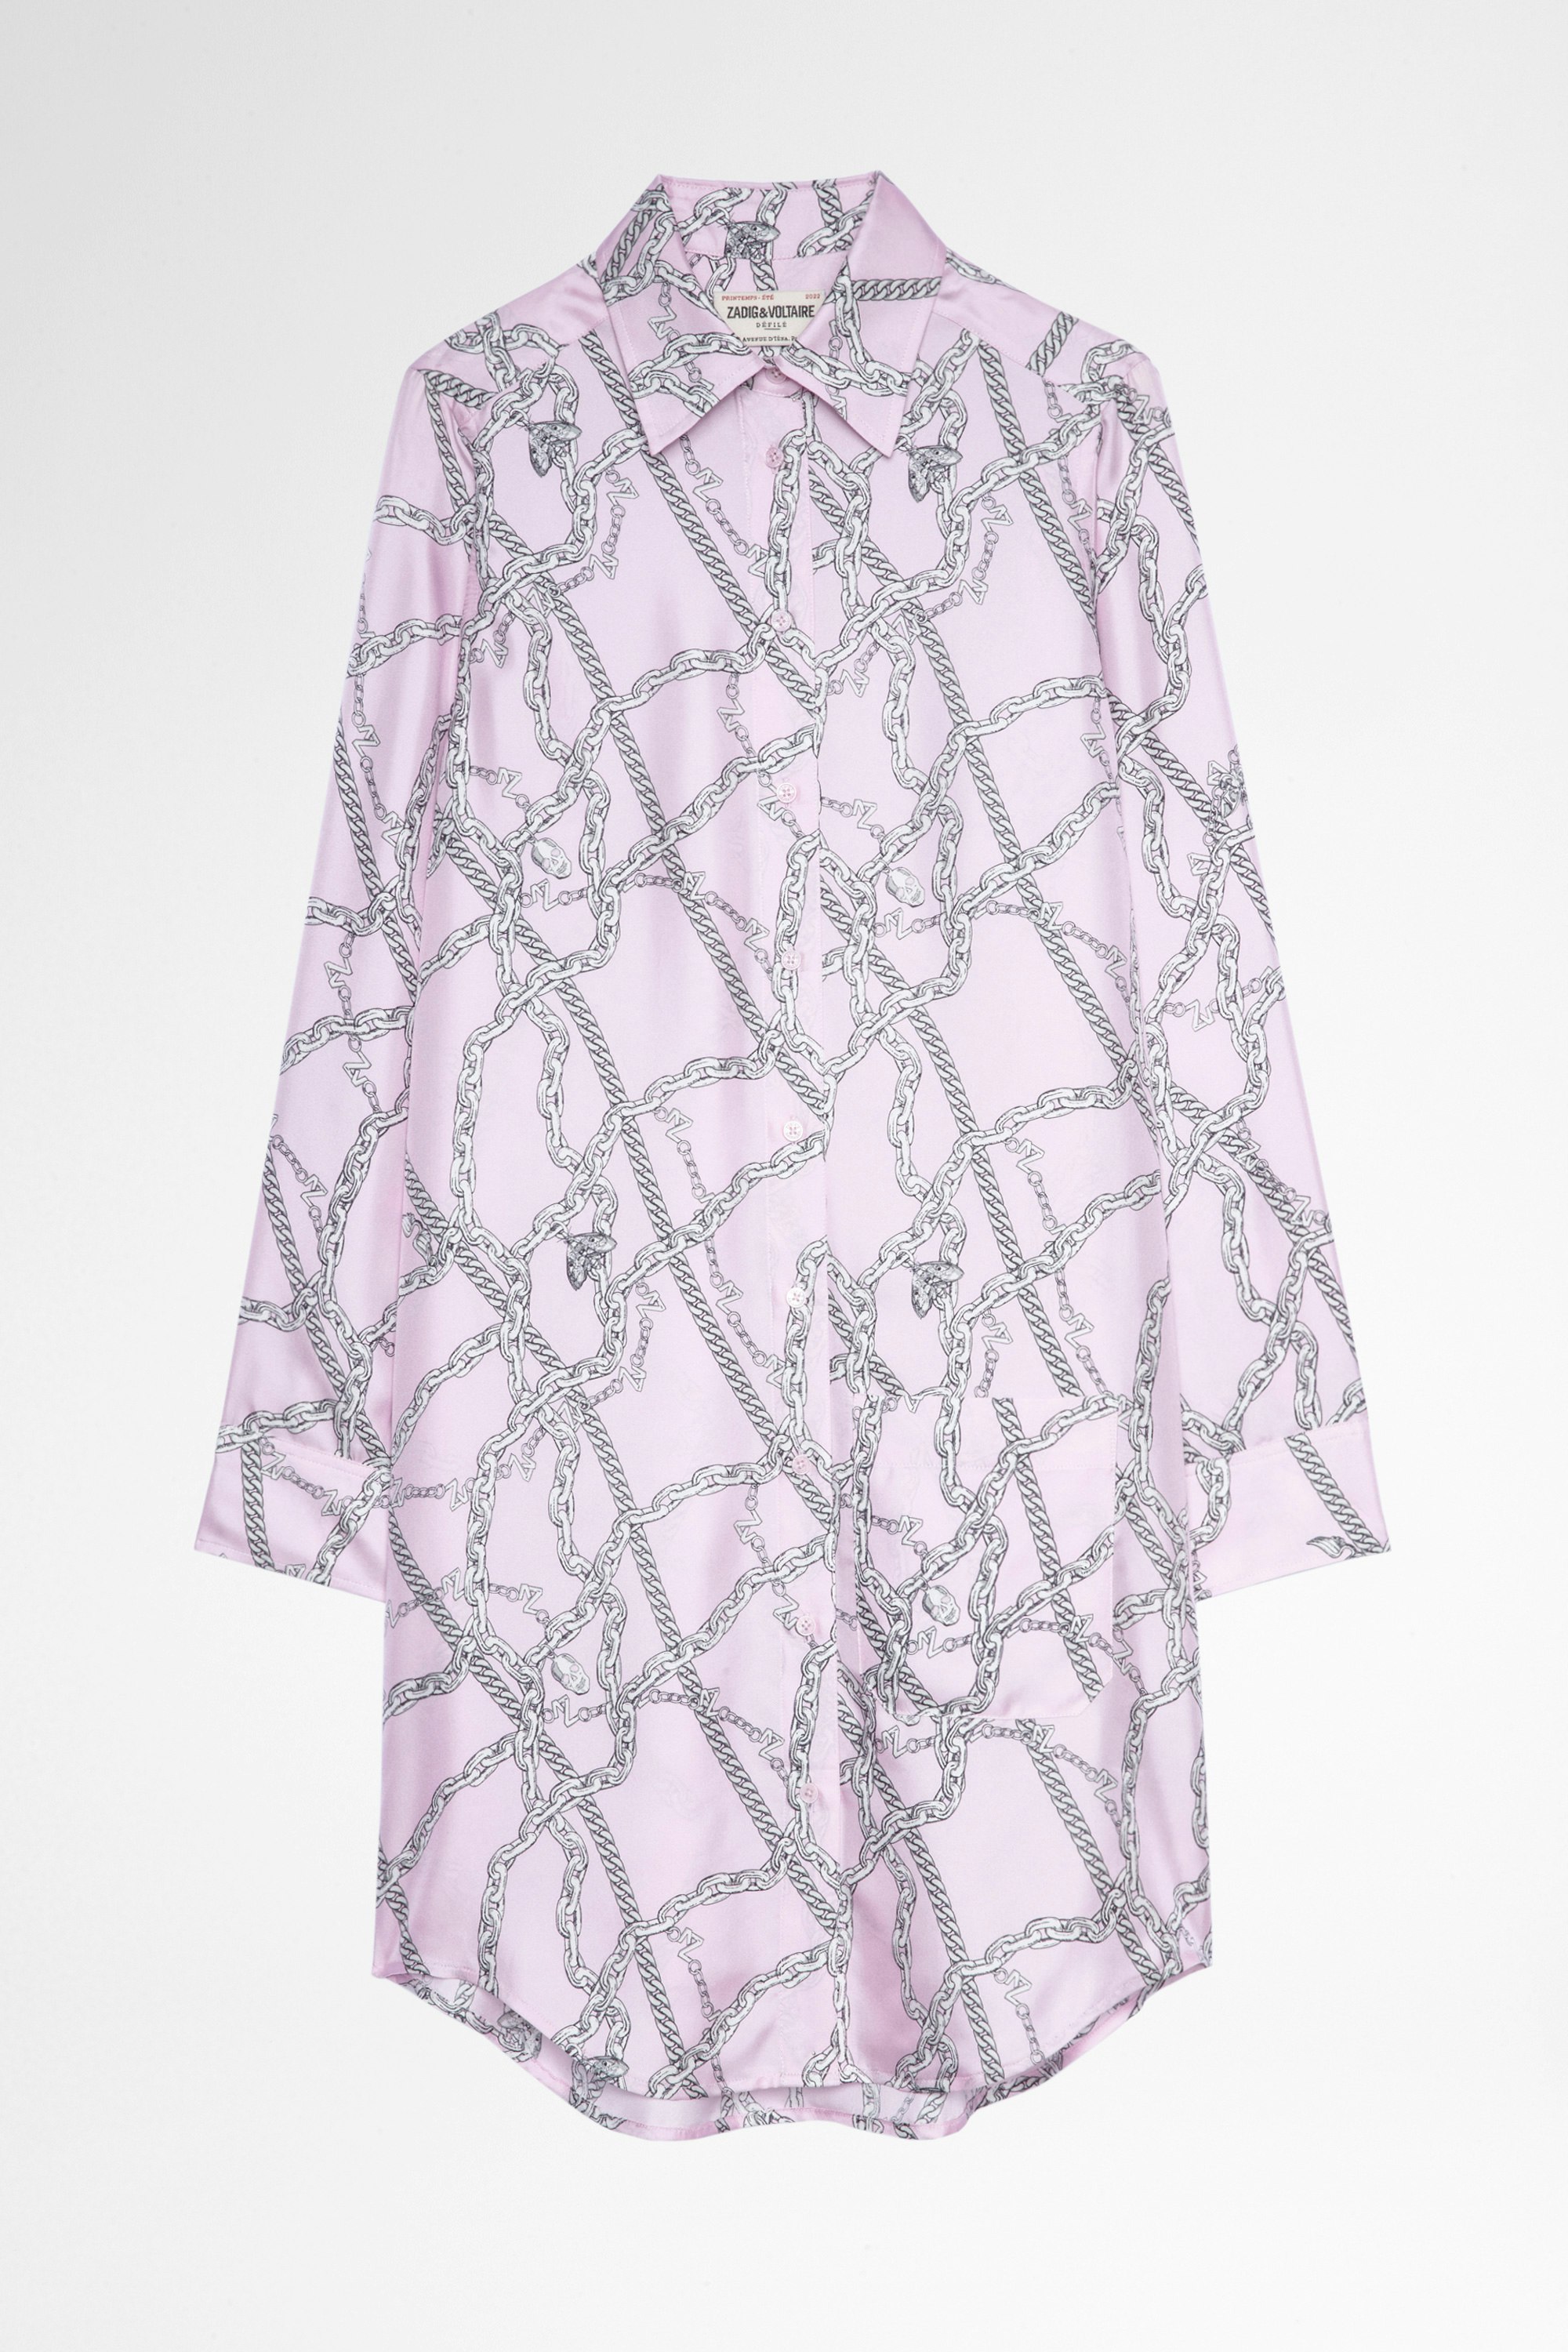 Rais Dress Silk Women's pink shirt dress with chain pattern